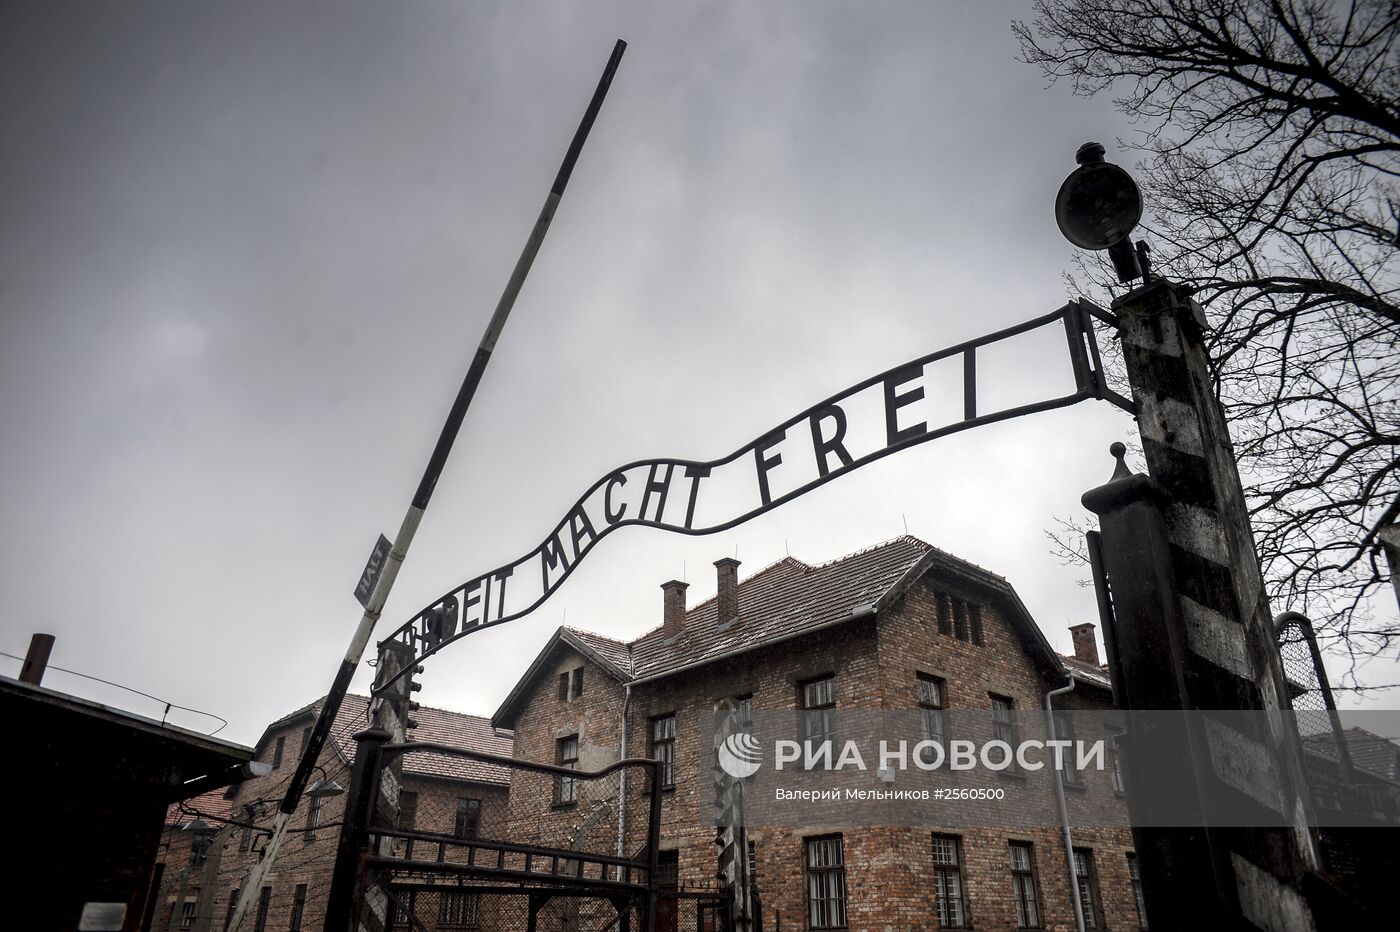 К 70-й годовщине освобождения концлагеря Аушвиц-Биркенау (Освенцим) Красной Армией